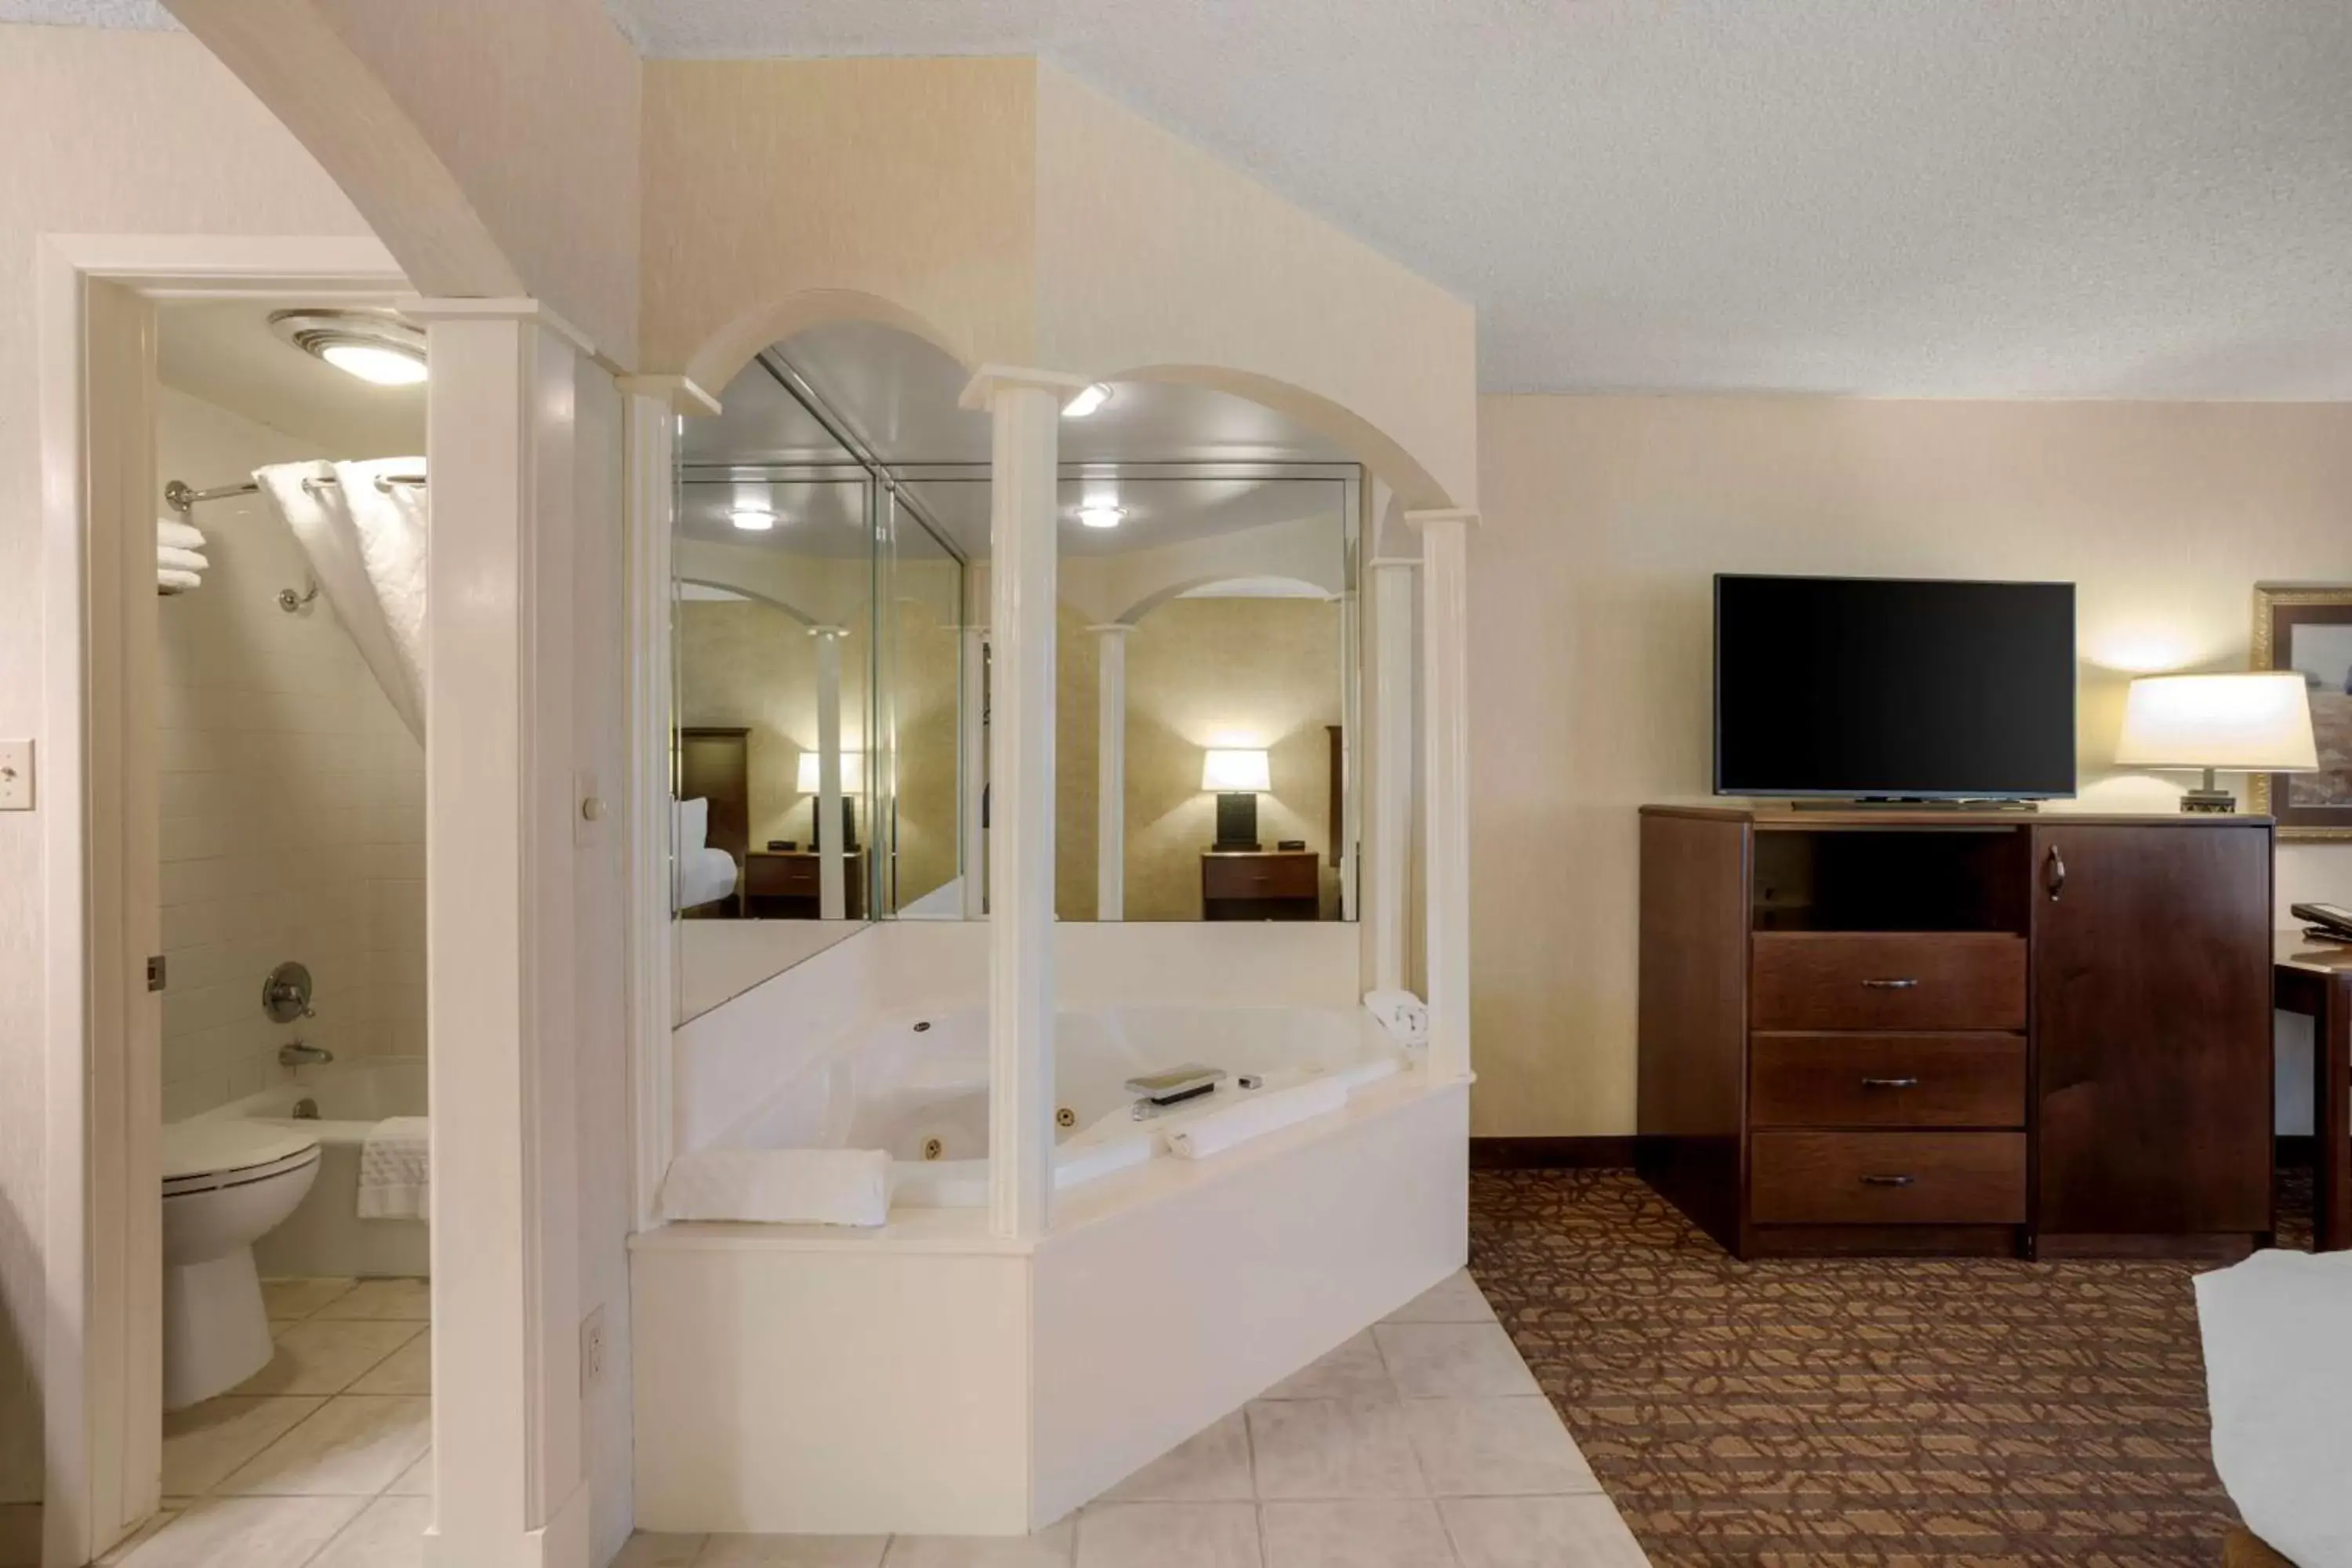 Bedroom, Bathroom in Best Western Inn of the Ozarks